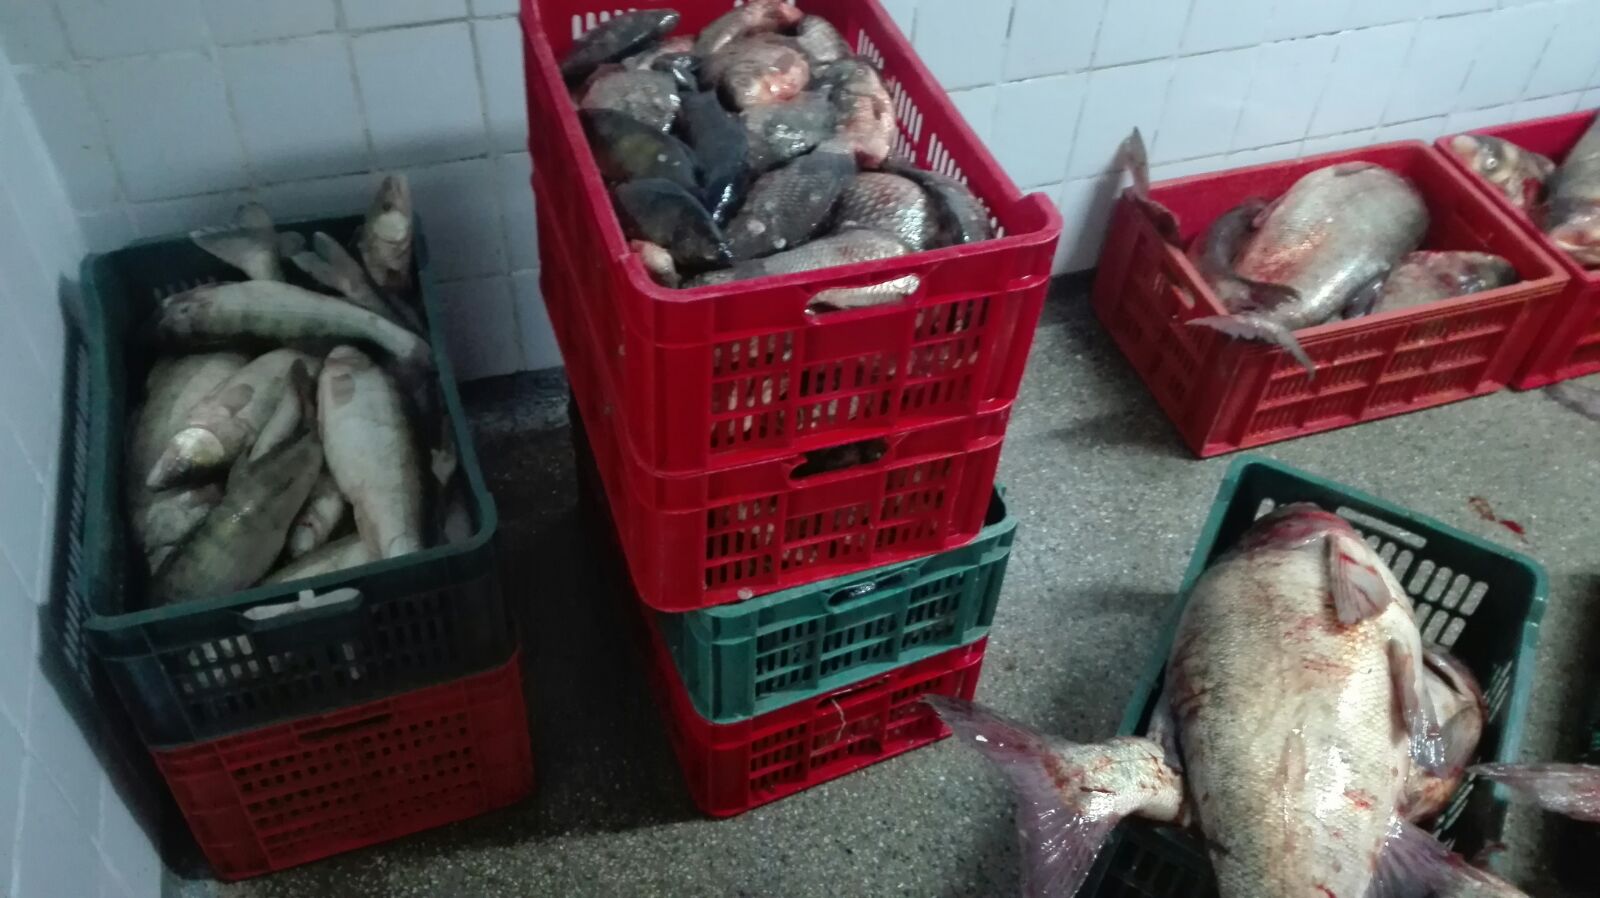 Peste 500 de kilograme de peşte confiscate la Tulcea